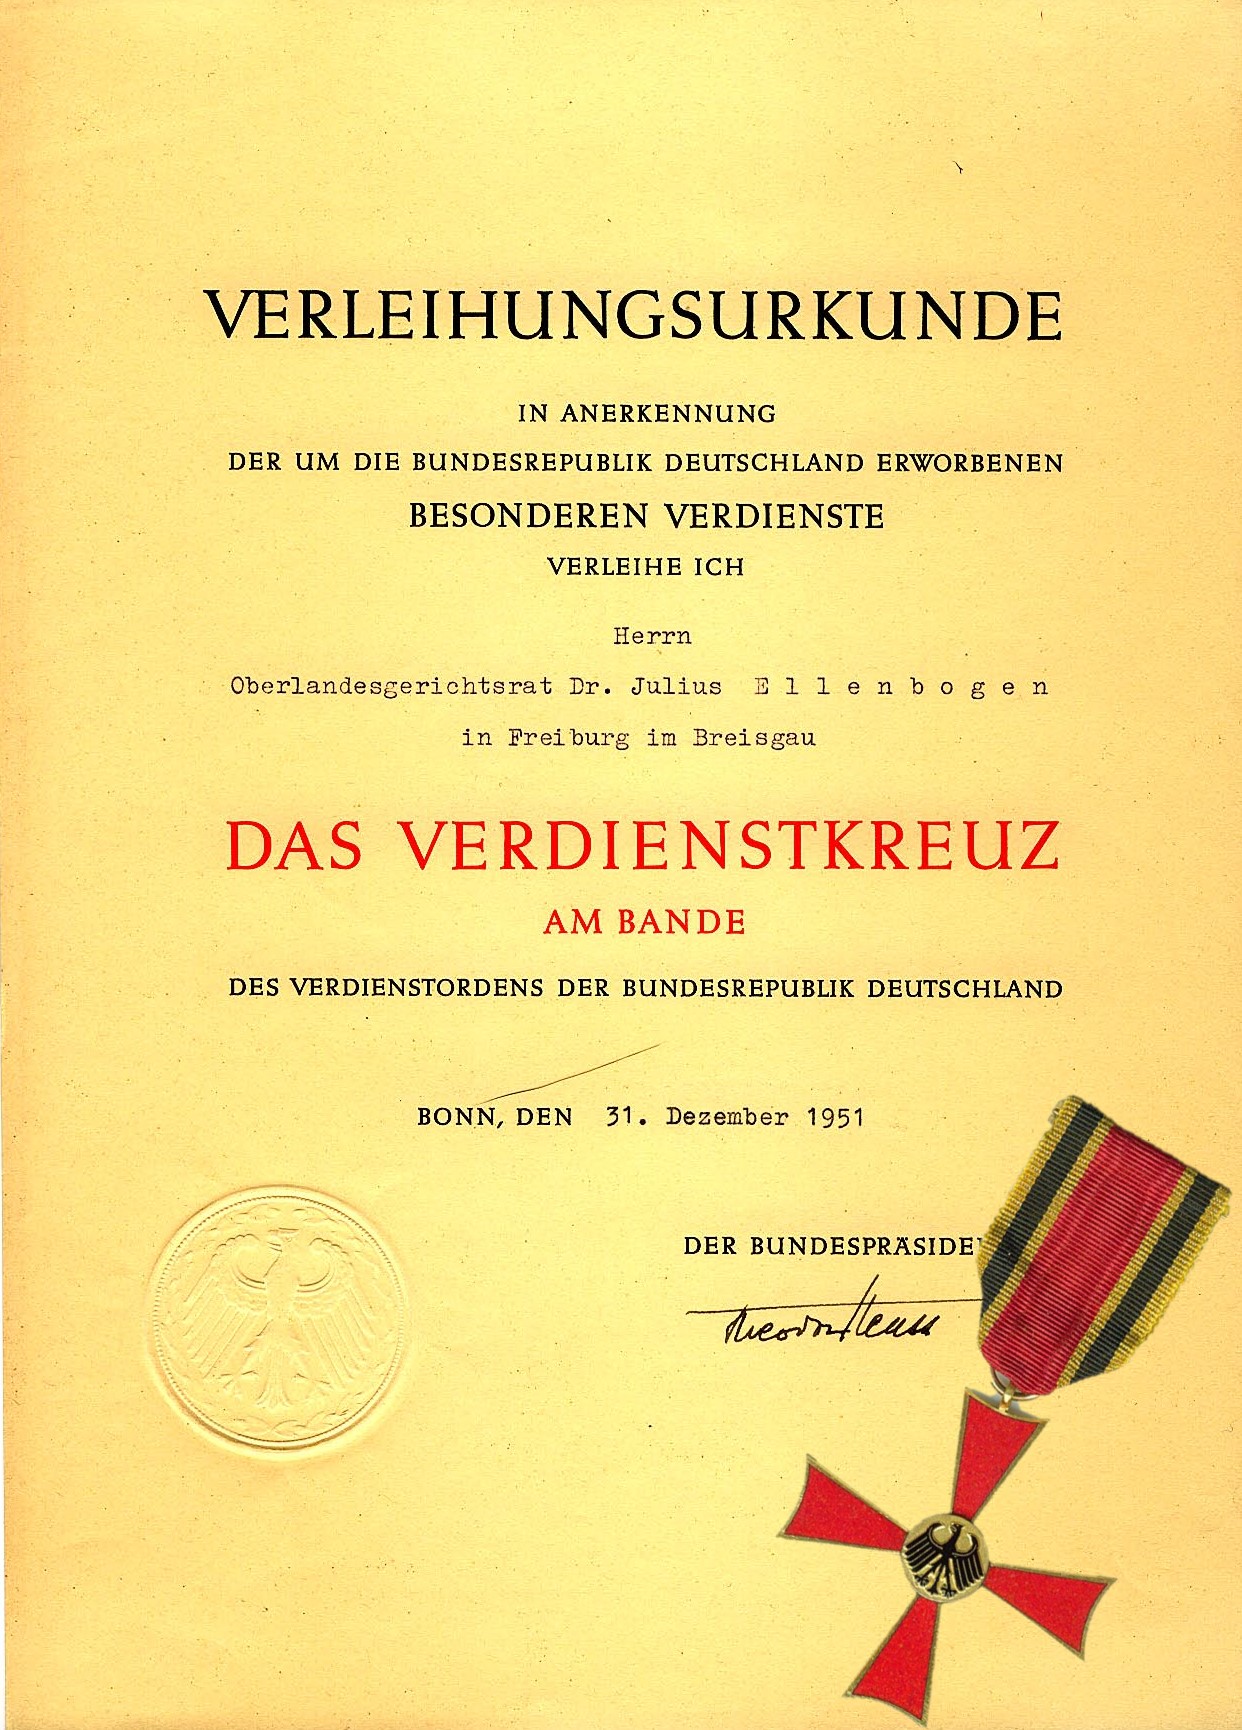 Awarded to Julius Ellenbogen 1951